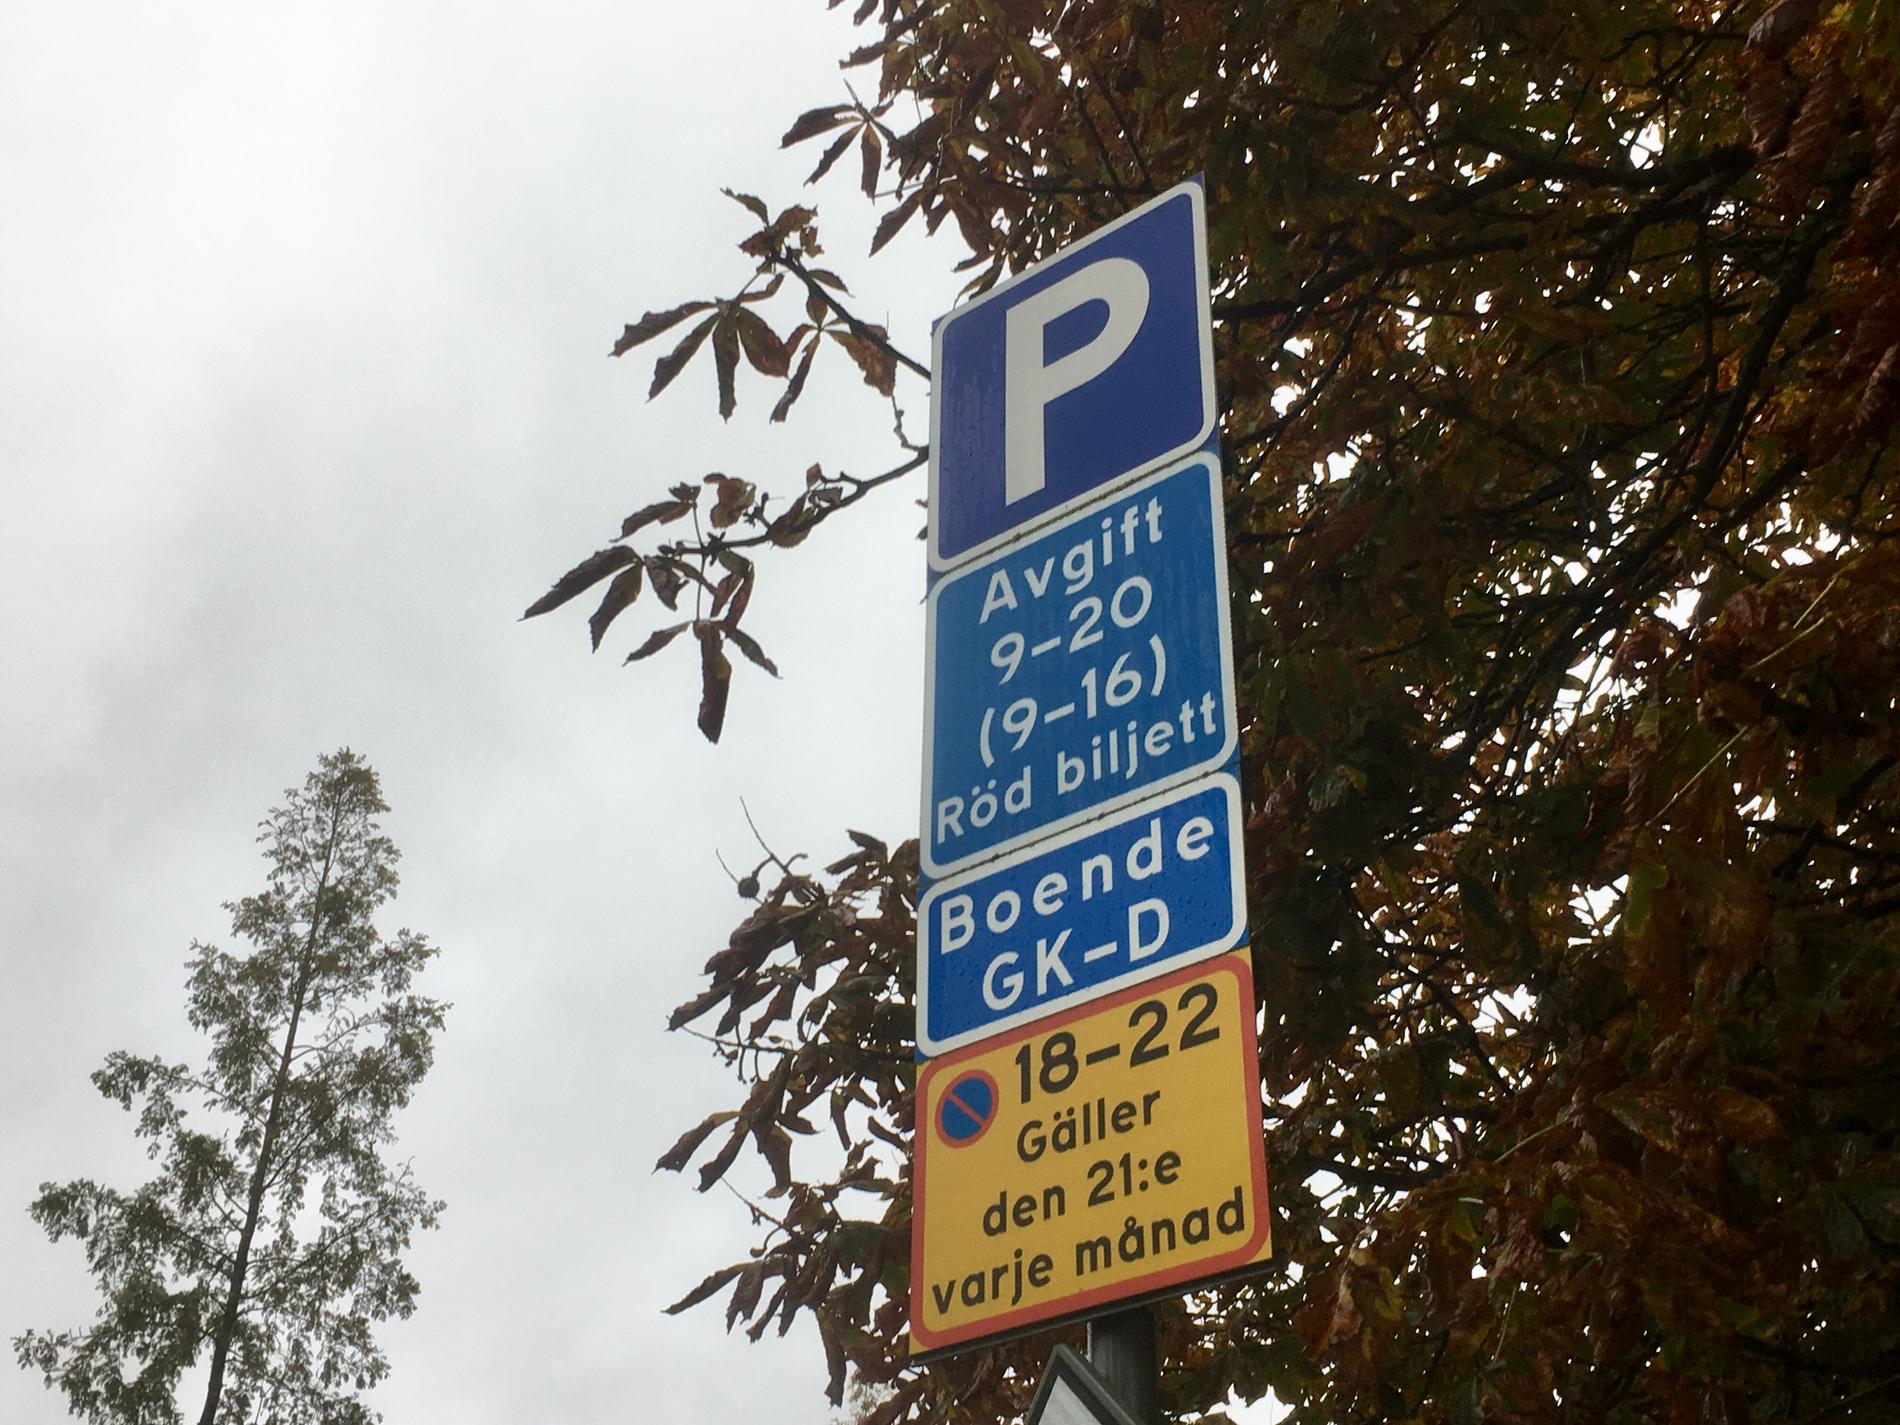 Boendeparkering erbjuds inte i nybyggda områden i Malmö. Skillnaden i parkeringskostnad blir mycket stor för boende som måste parkera på gatan.